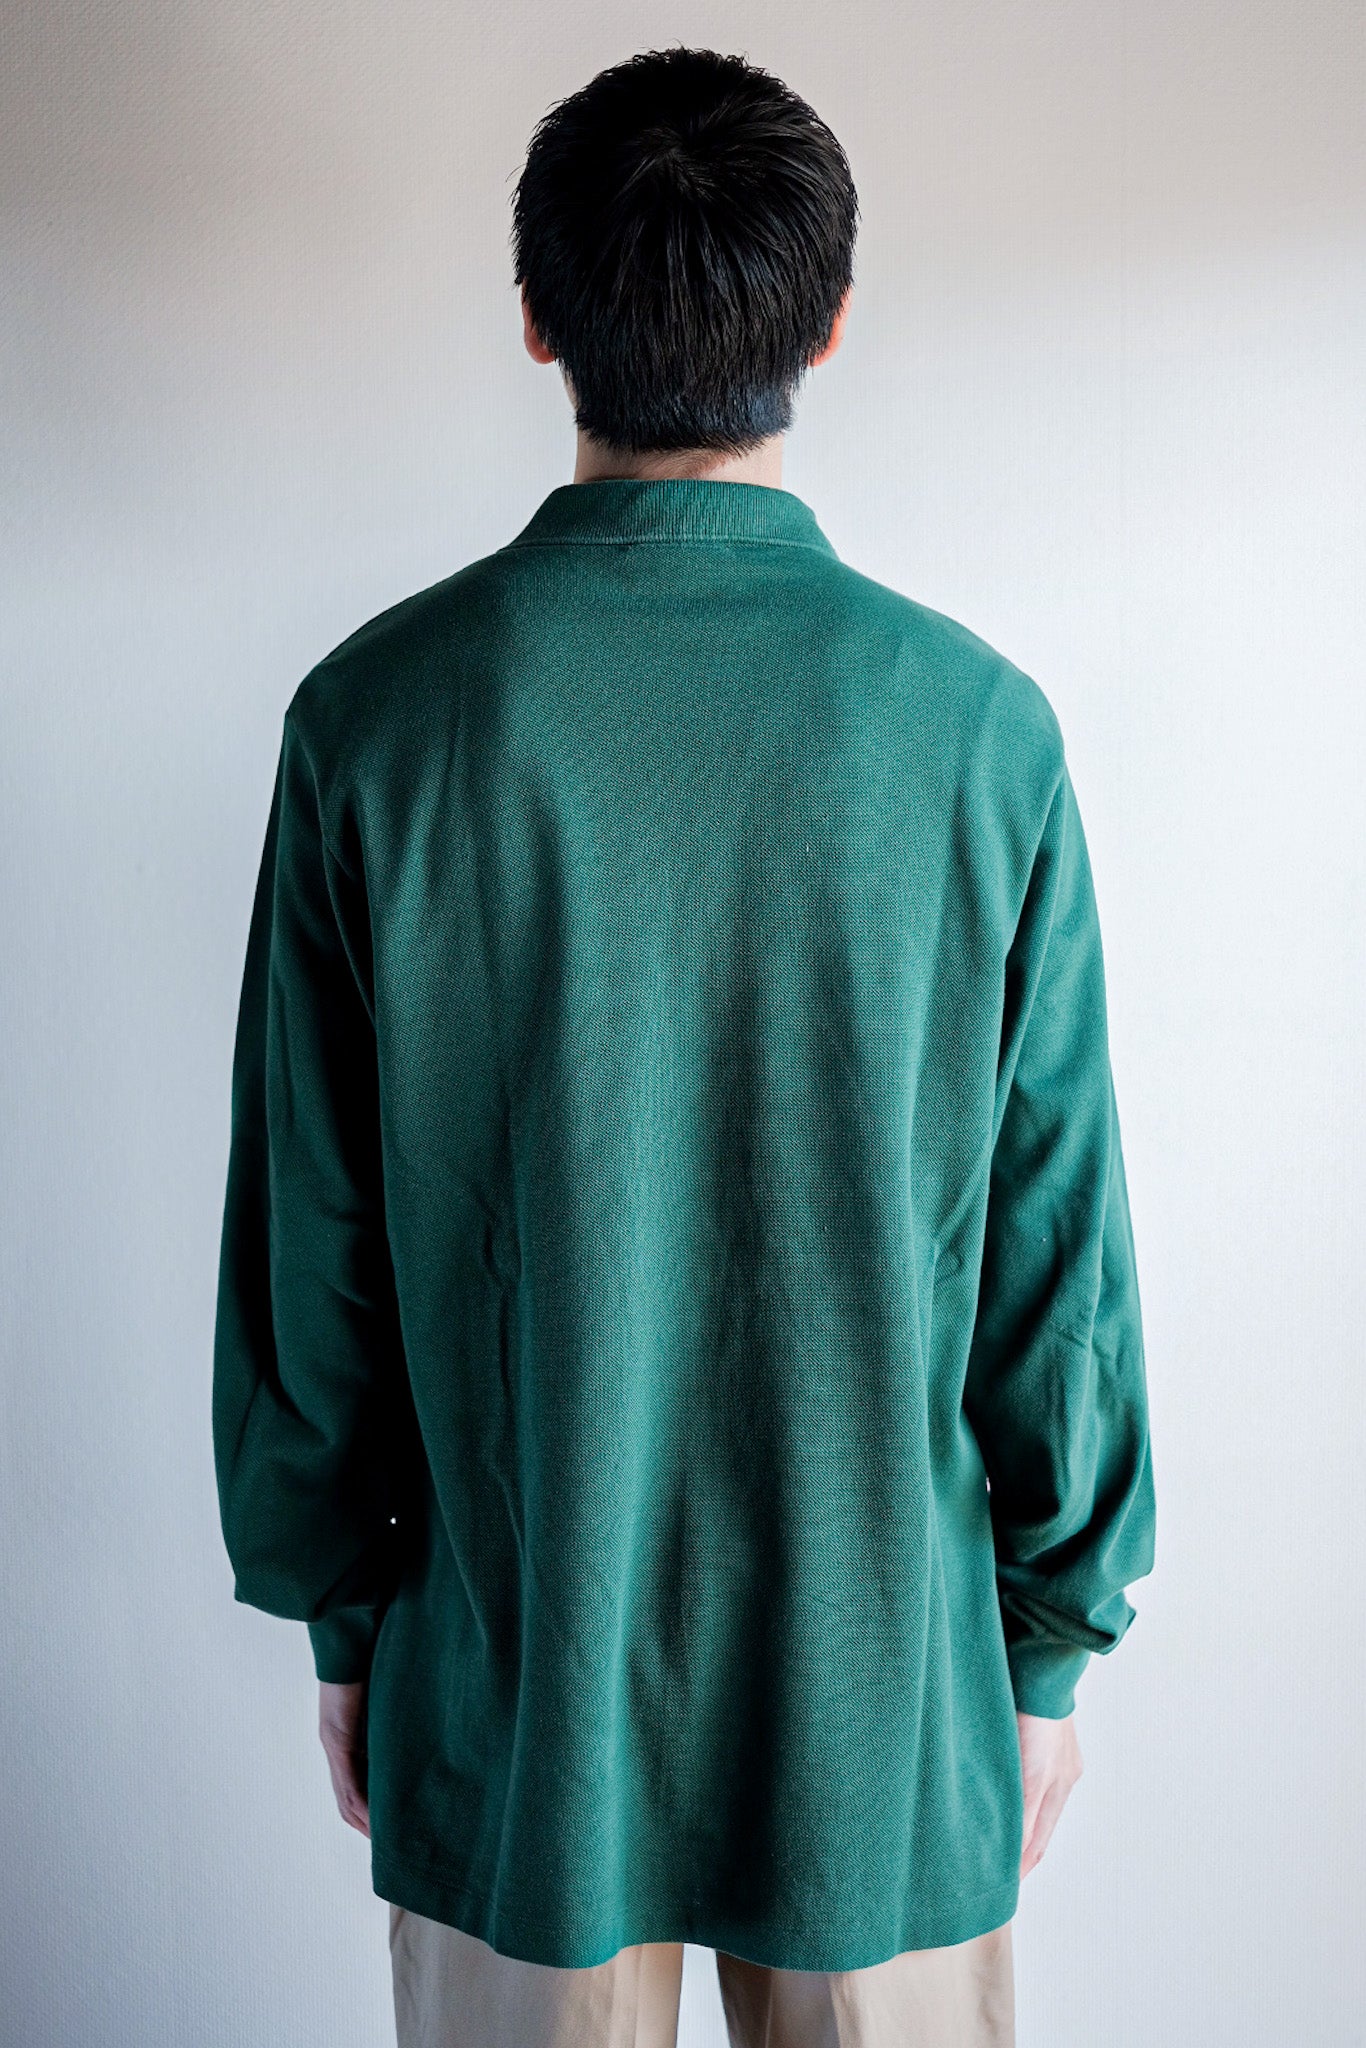 [〜80年代]顏料Lacoste l/s polo襯衫尺寸。5“森林綠色”